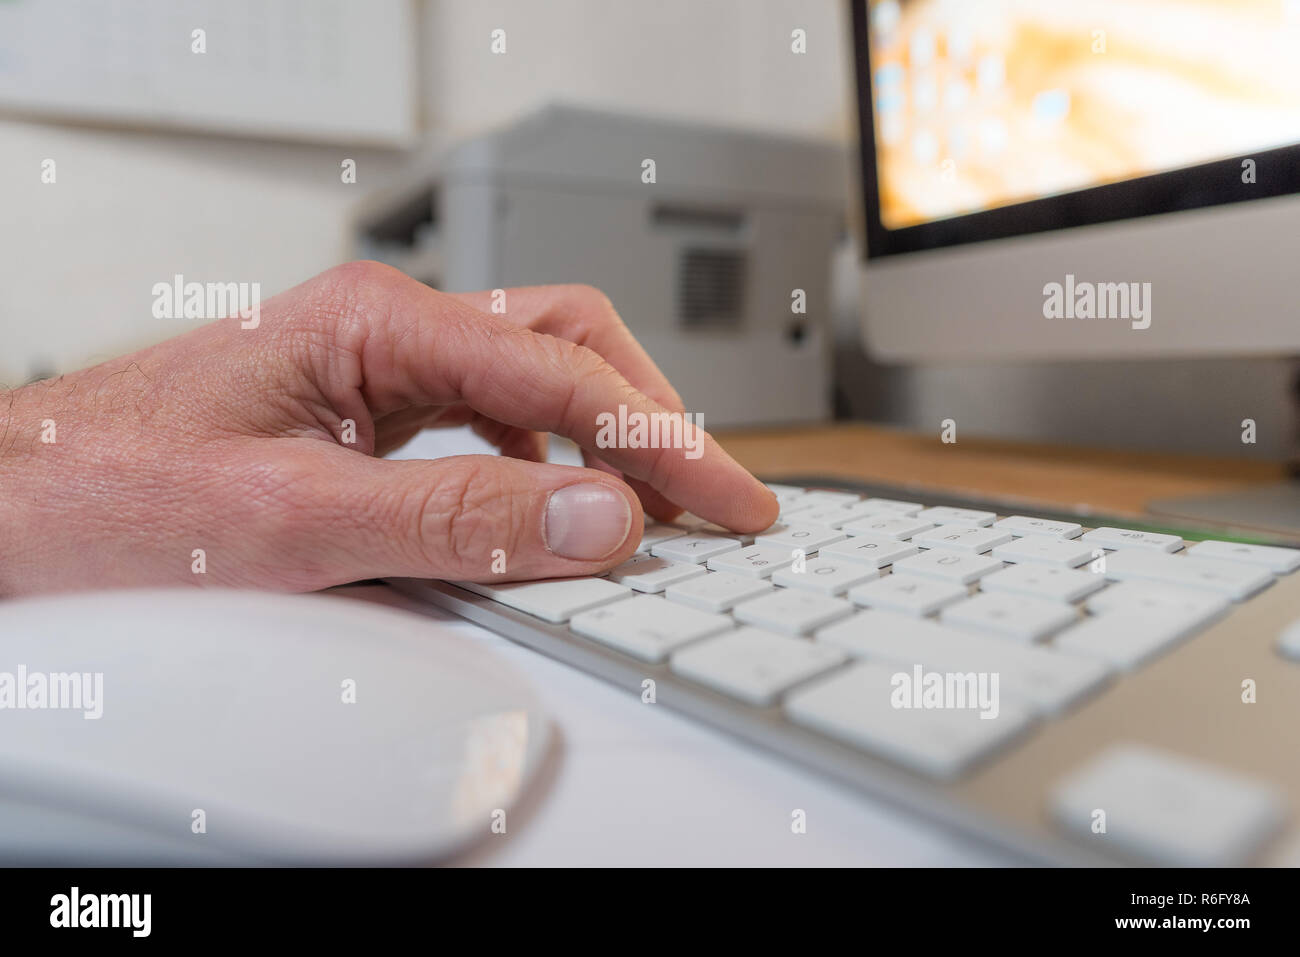 Main sur un clavier à l'écran et de l'imprimante en arrière-plan Banque D'Images